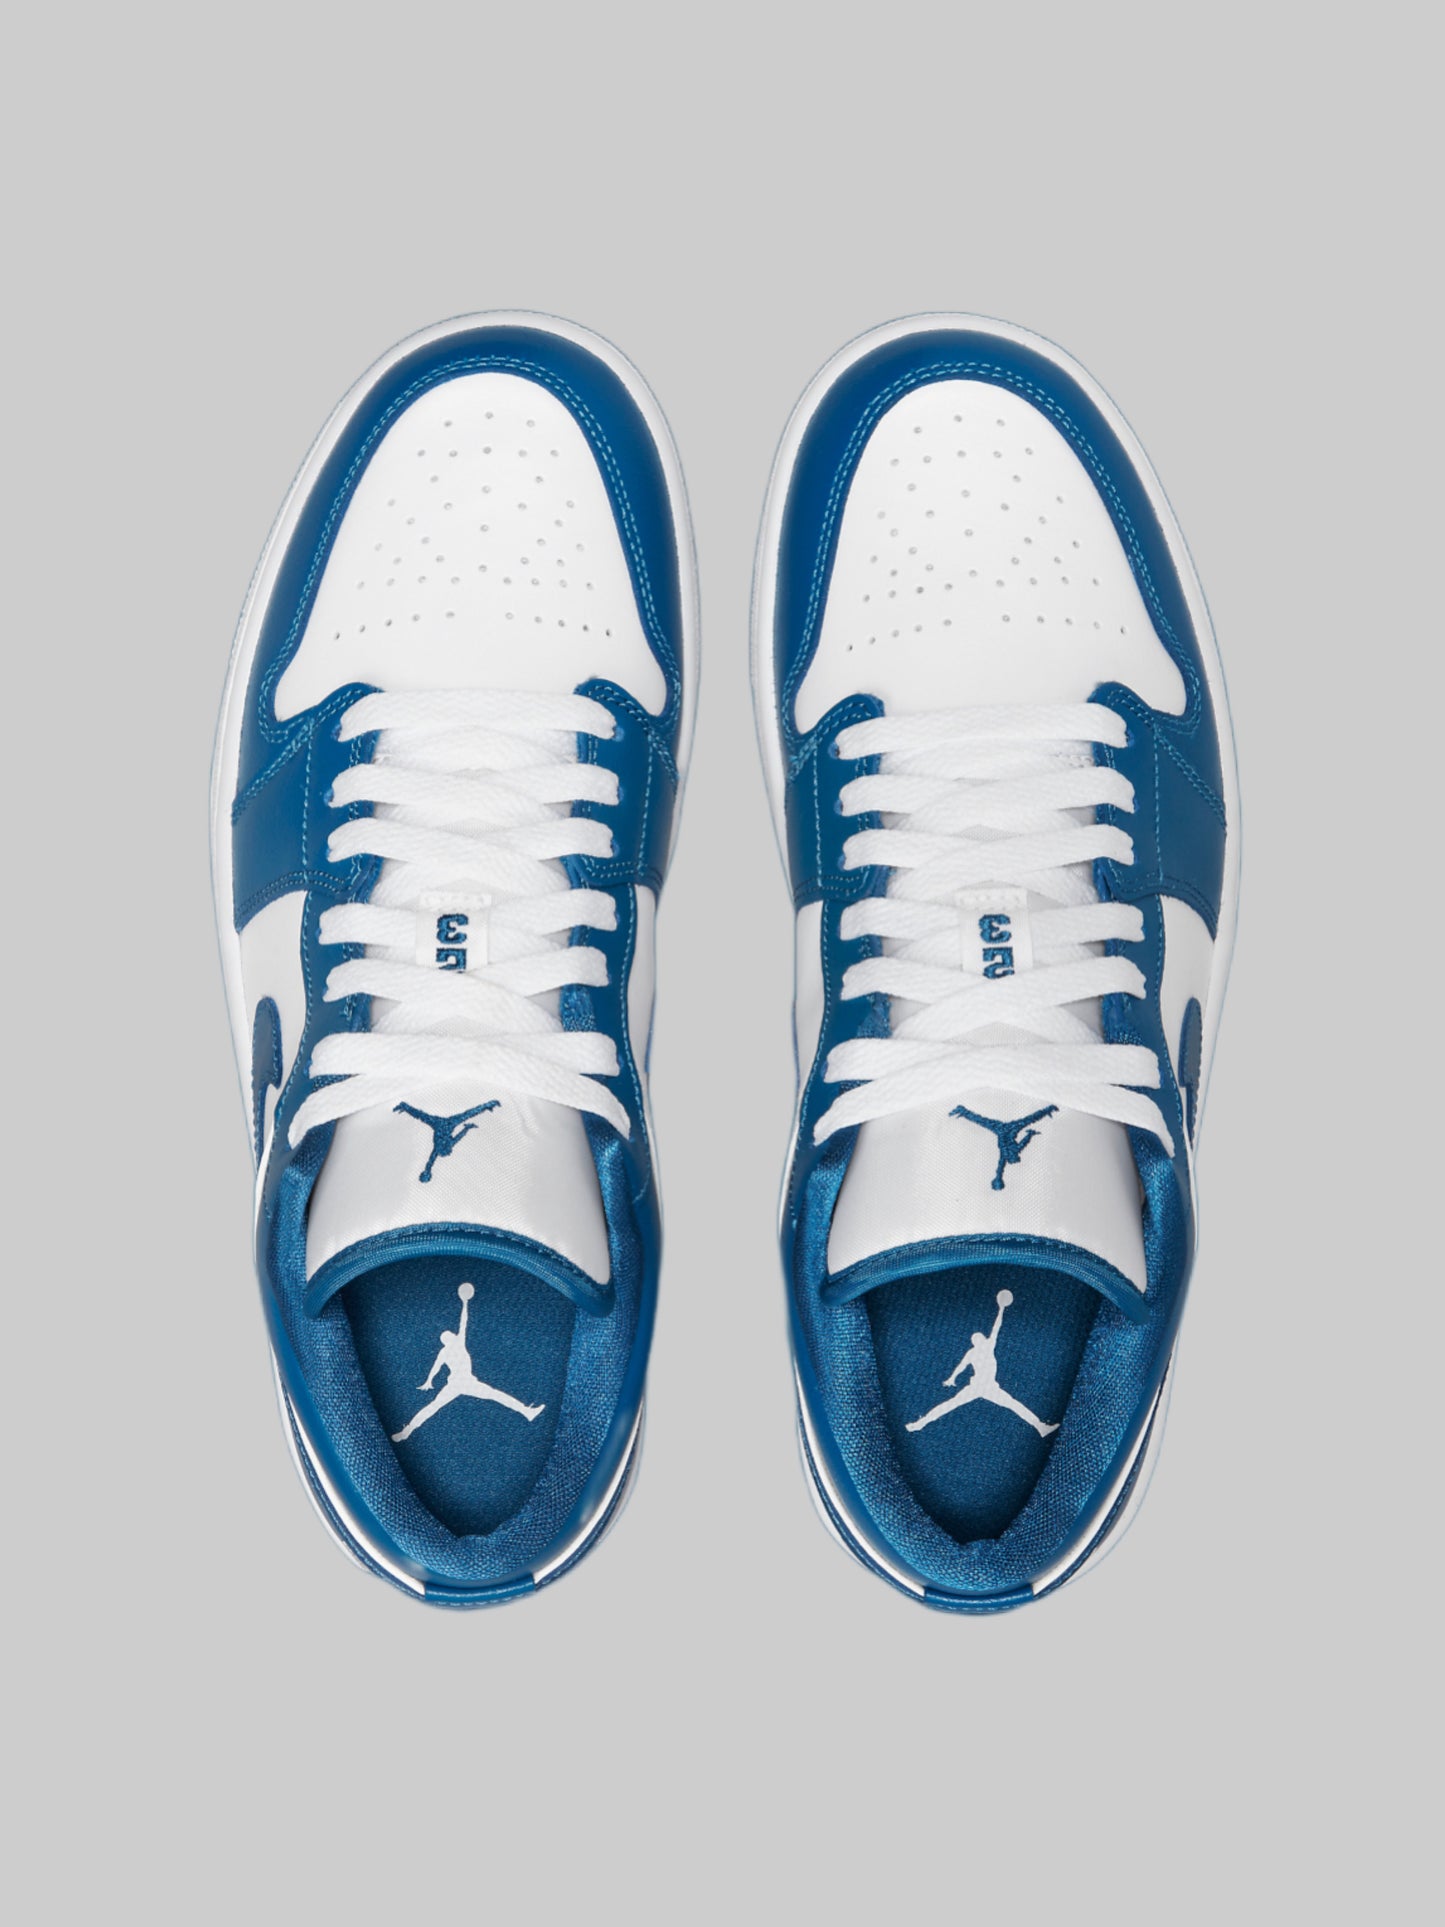 Air Jordan 1 Low Marina Blue